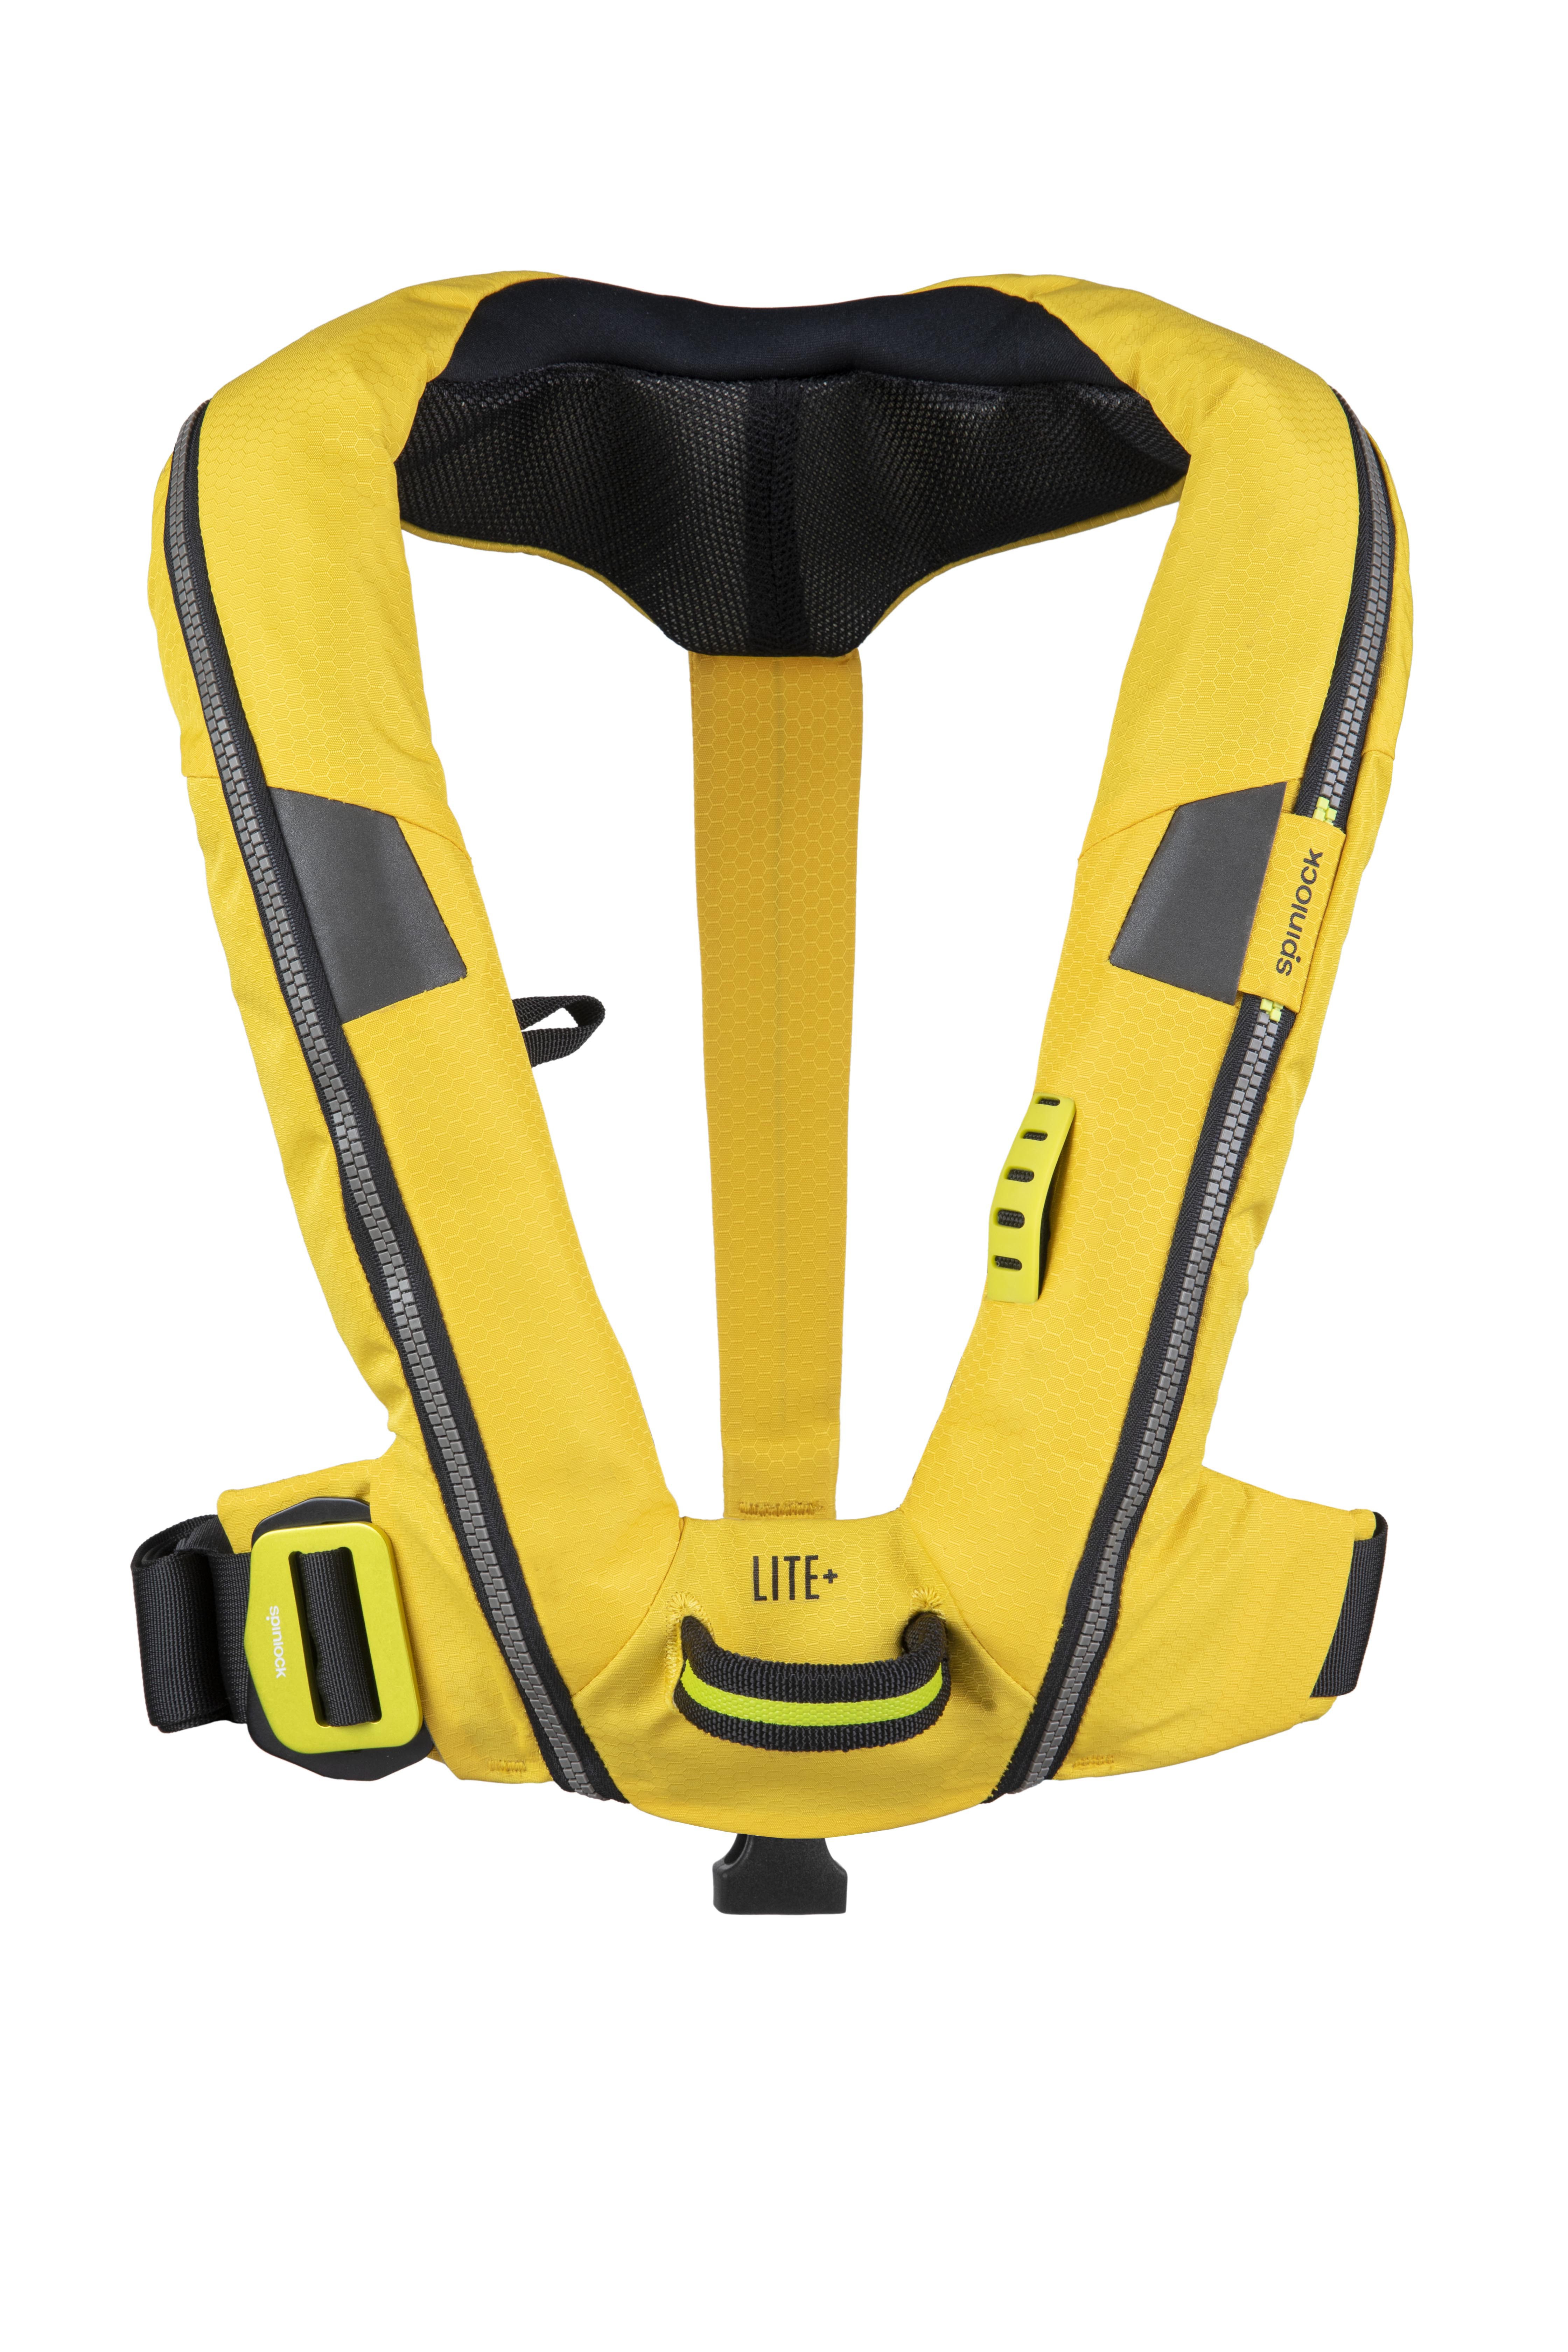 Automatische Schwimmweste Deckvest Lite+, gelb mit Sicherheitsschlaufe, 170N